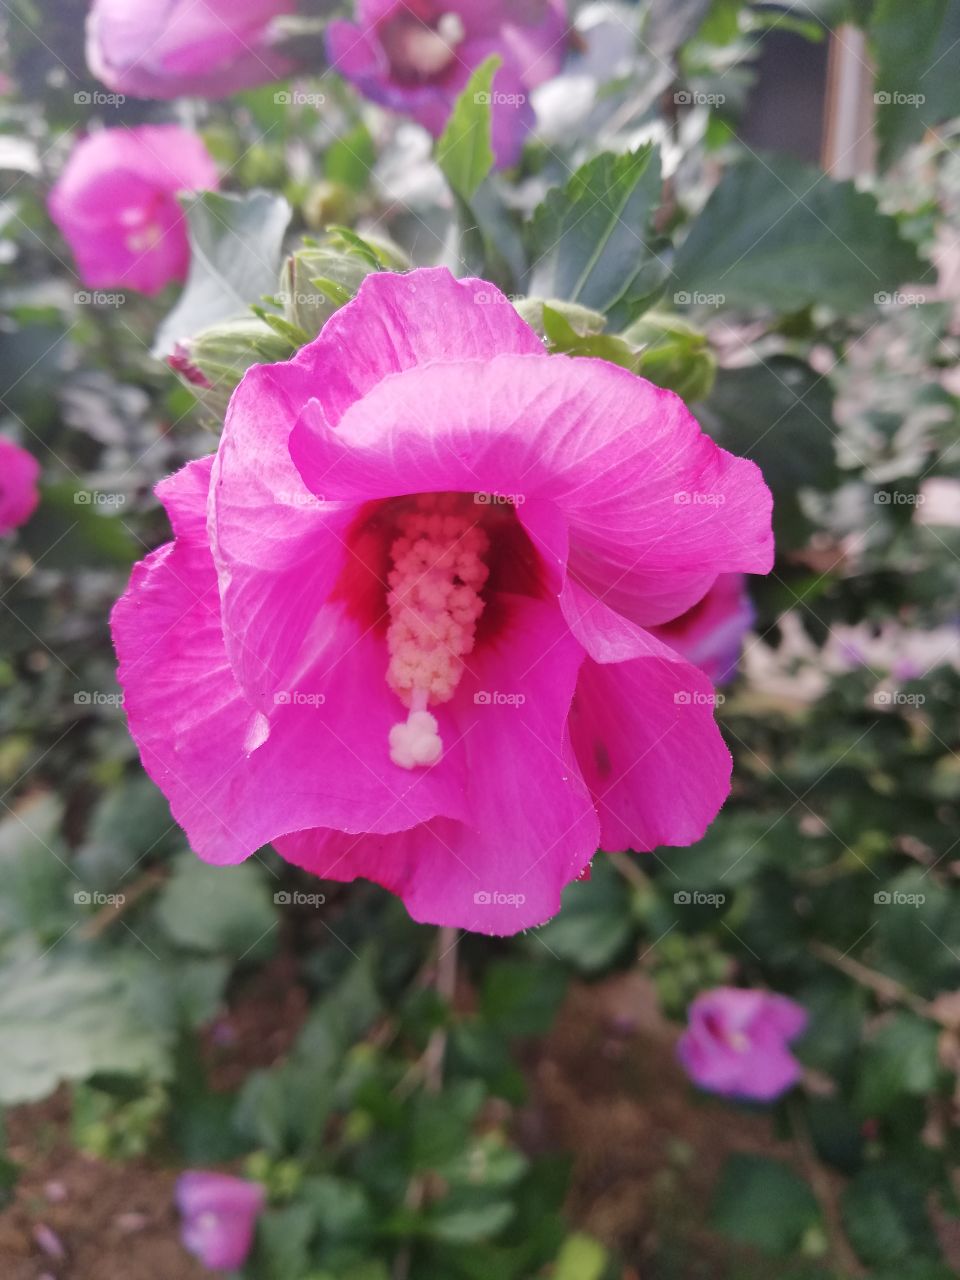 Zoomed flower